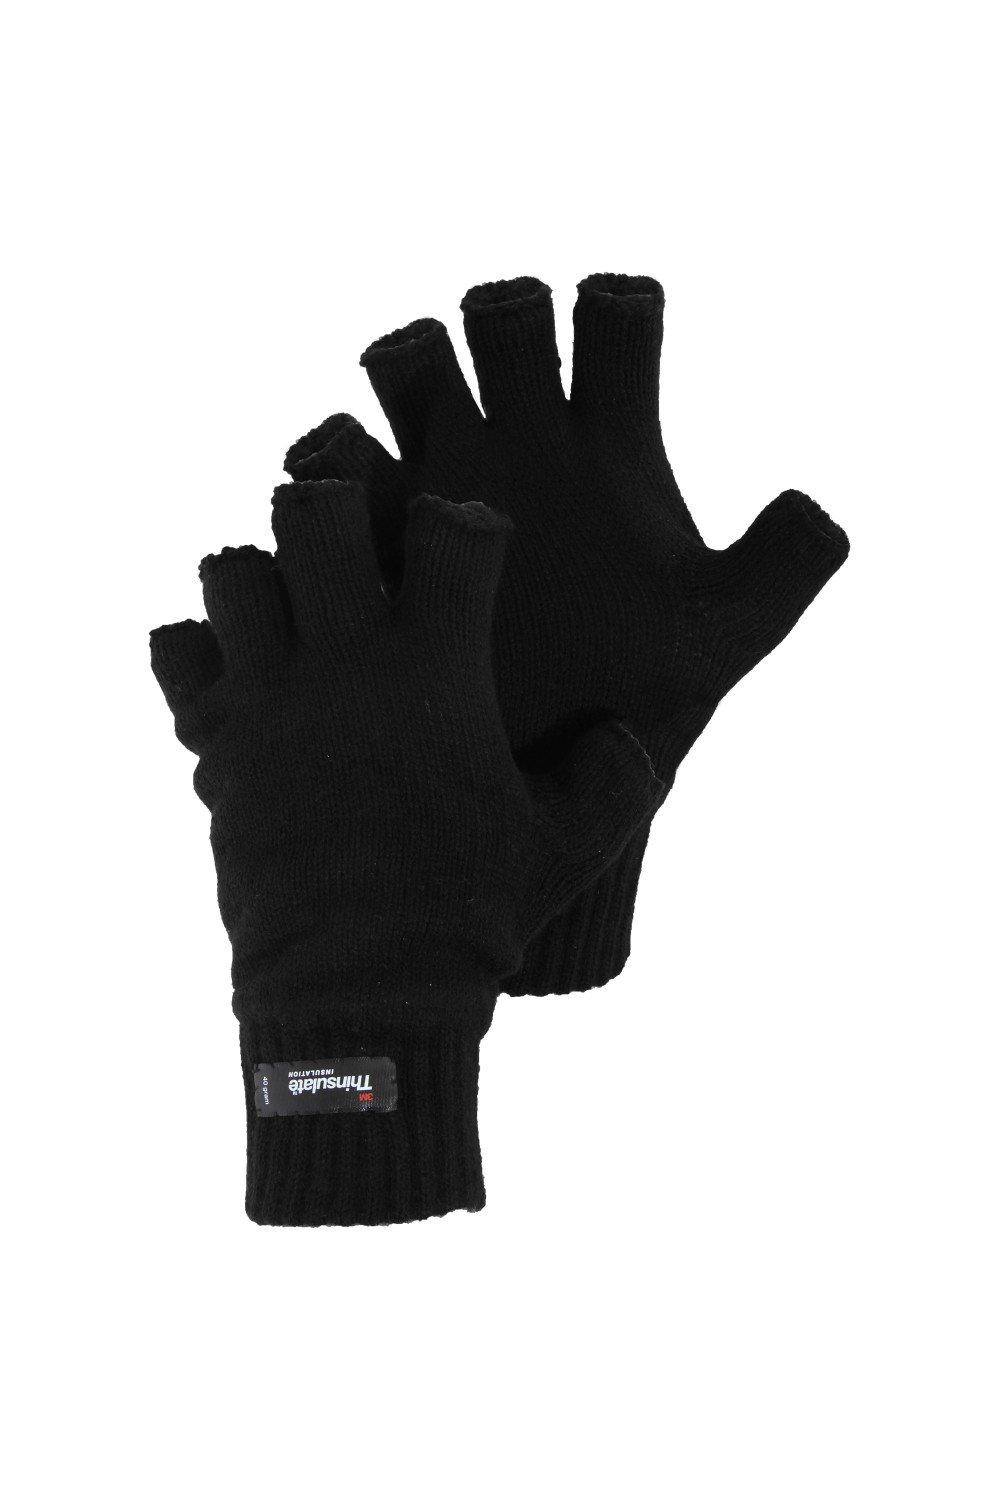 Вязаные зимние перчатки без пальцев Thinsulate Heatguard Universal Textiles, черный распродажа термовязаные зимние перчатки universal textiles серый